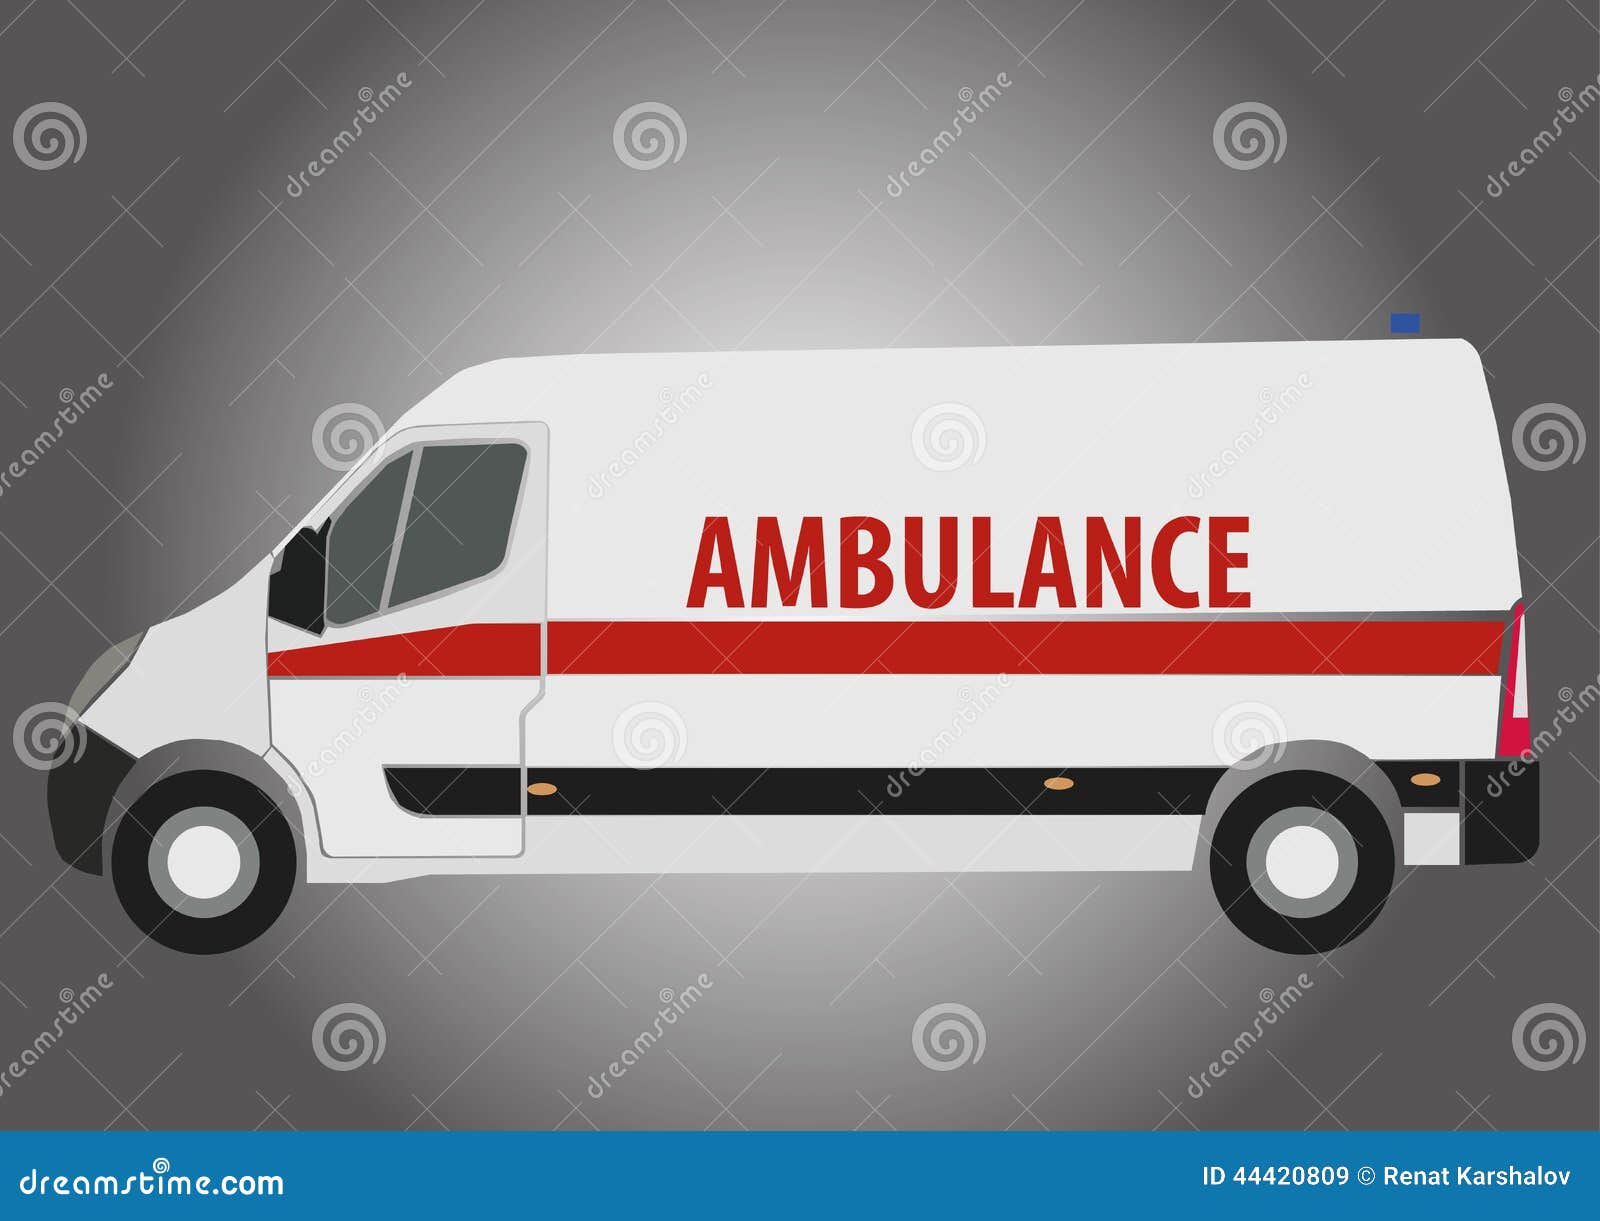 clipart ambulance car - photo #42